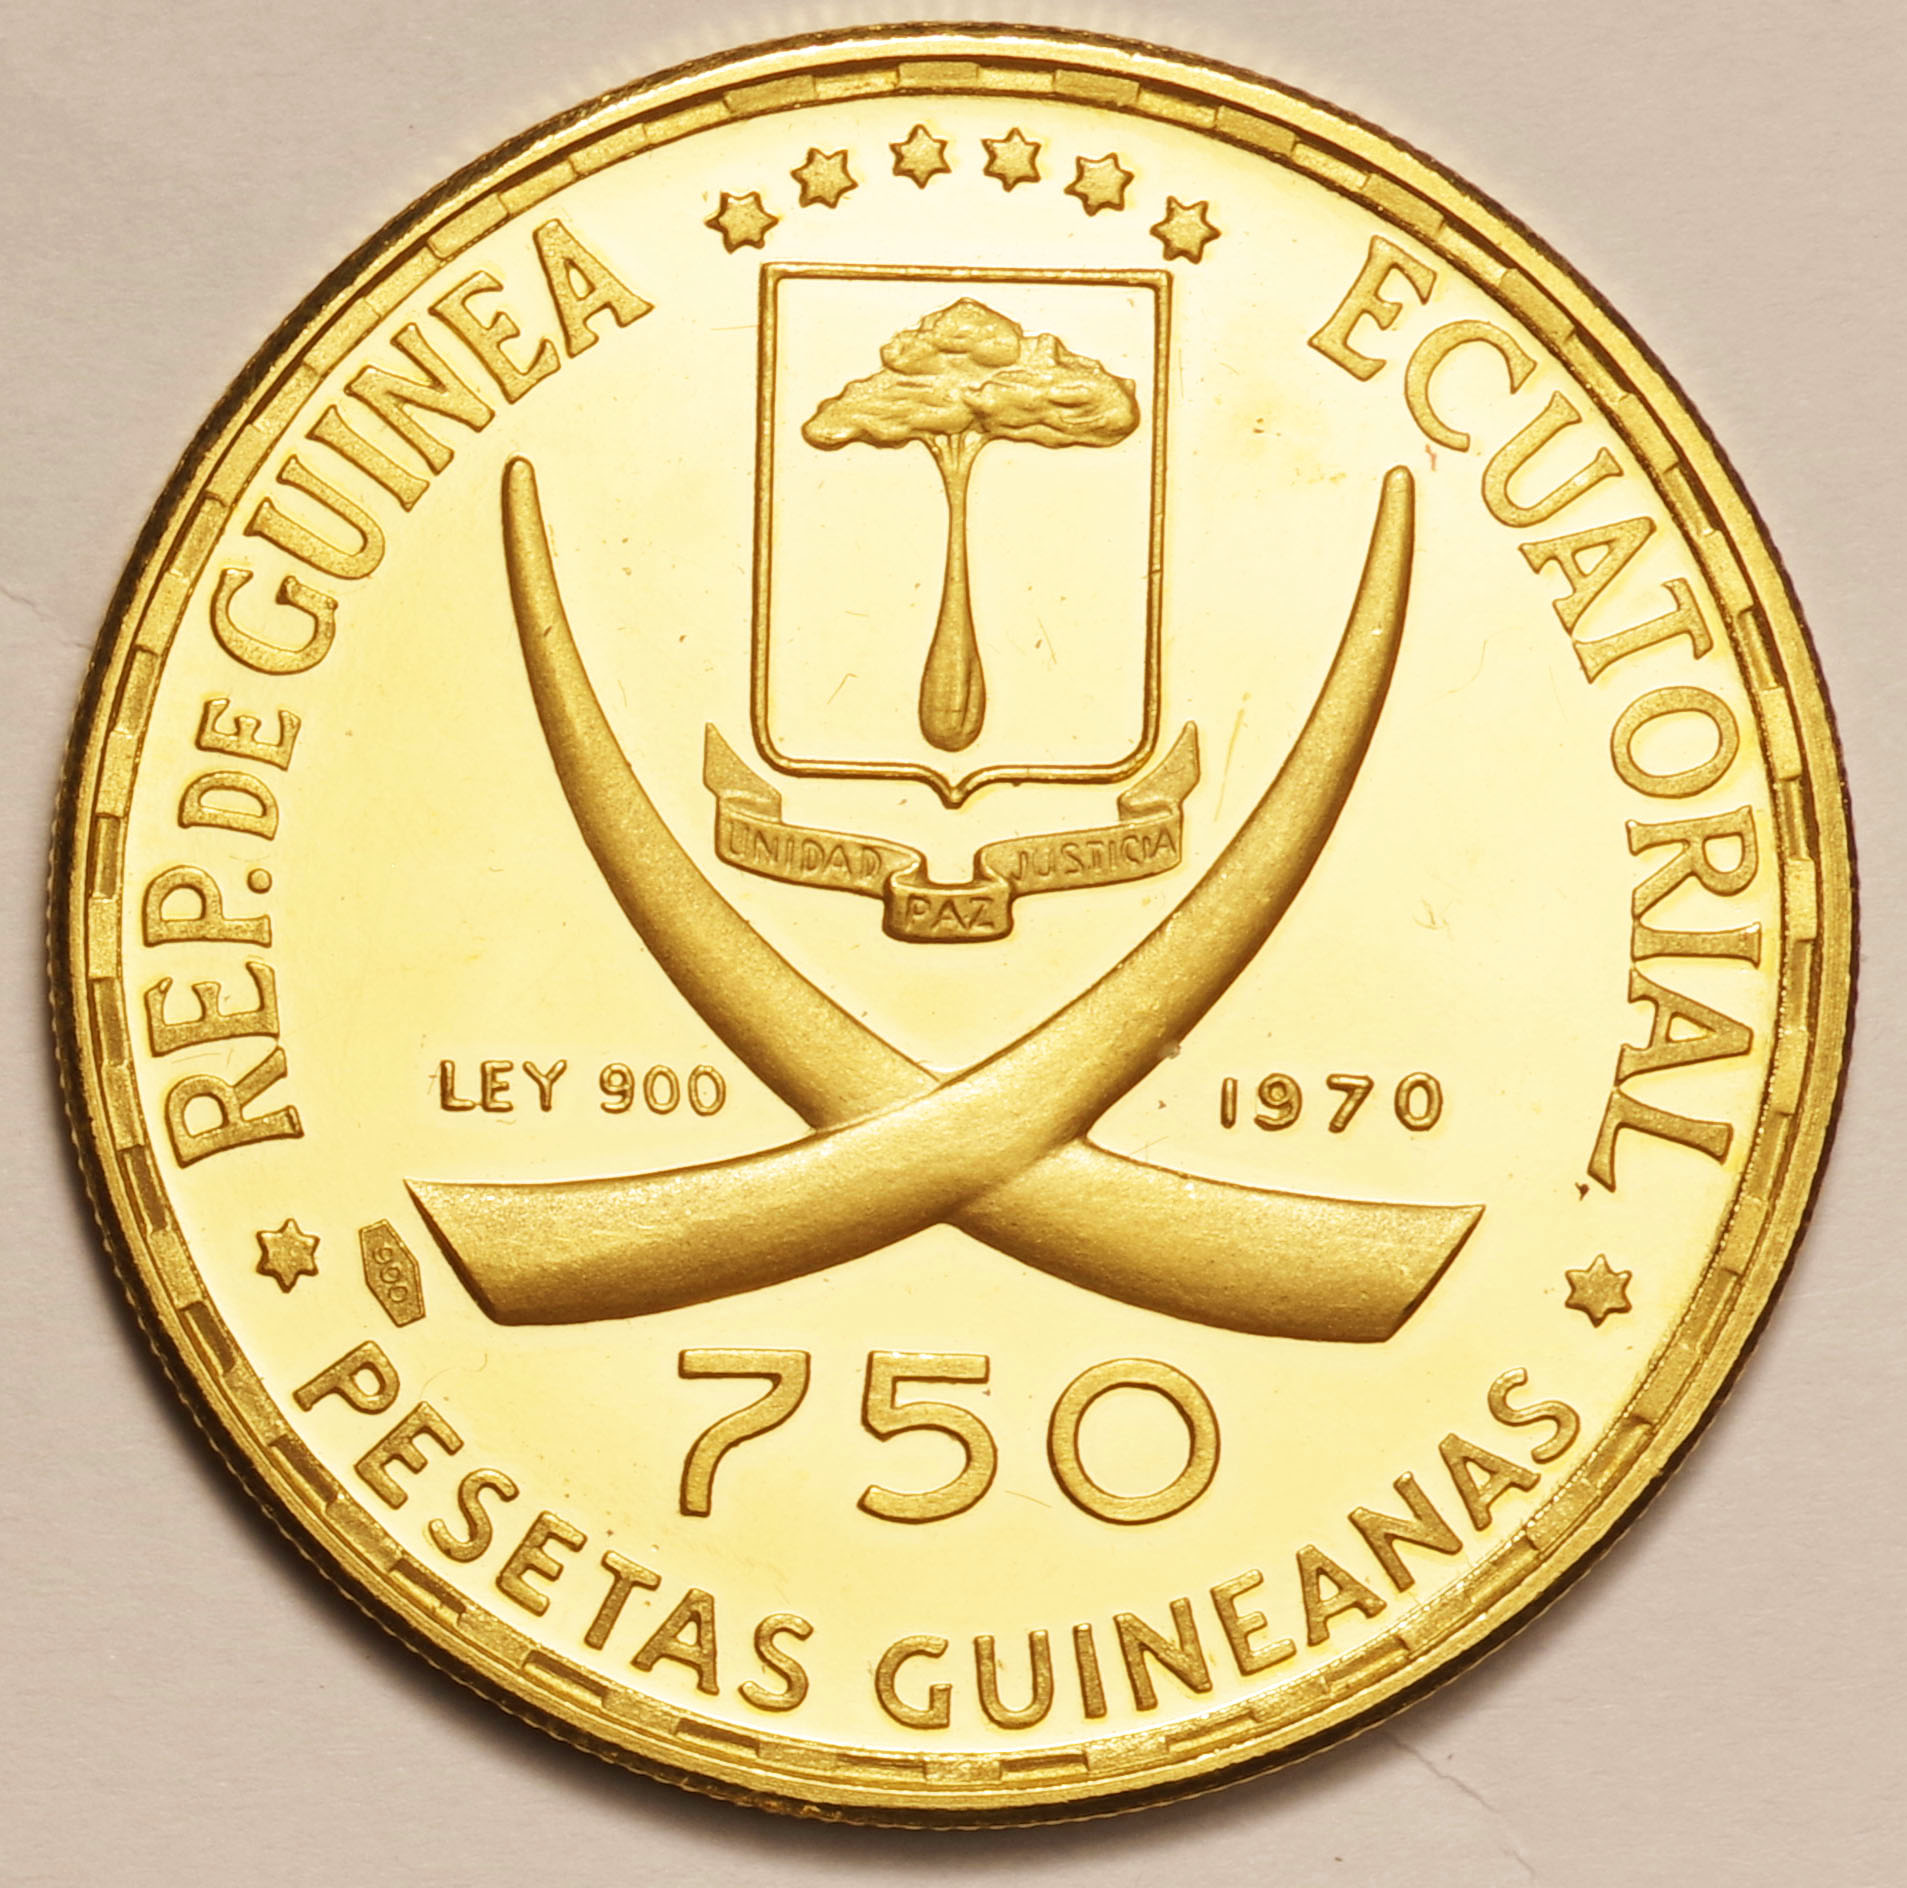 赤道ギニア-Equatorial Guinea. ローマ遷都100周年記念 -コロシアム